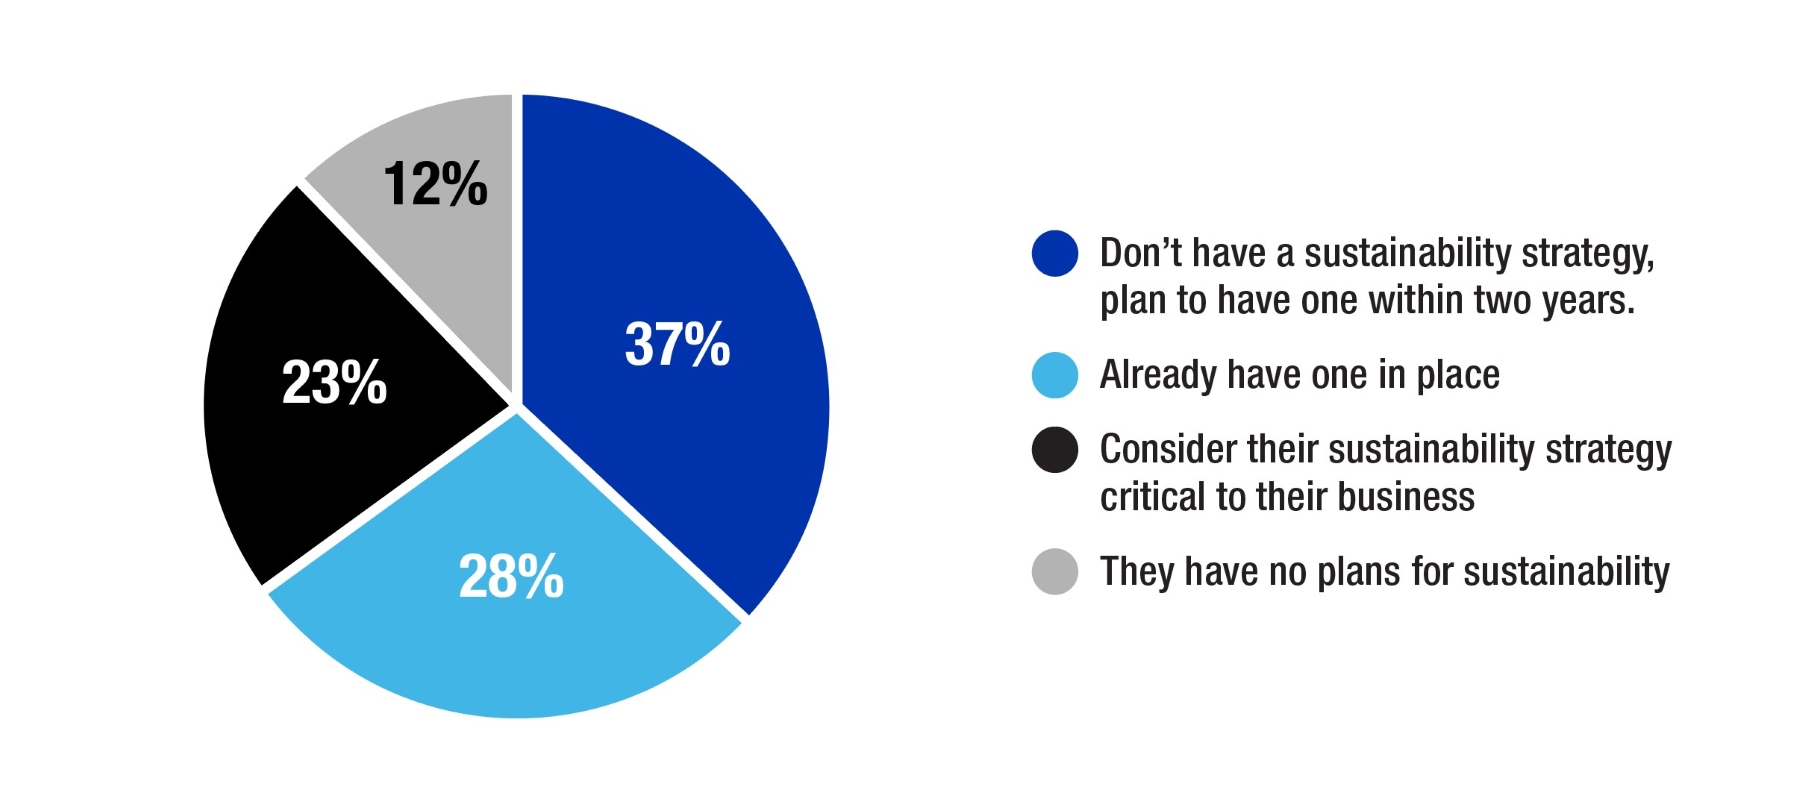 Graco gibi birçok imalat şirketinden katılımcılarla gerçekleştirilen endüstriyel sürdürülebilirlikle ilgili bir anketin sonucu